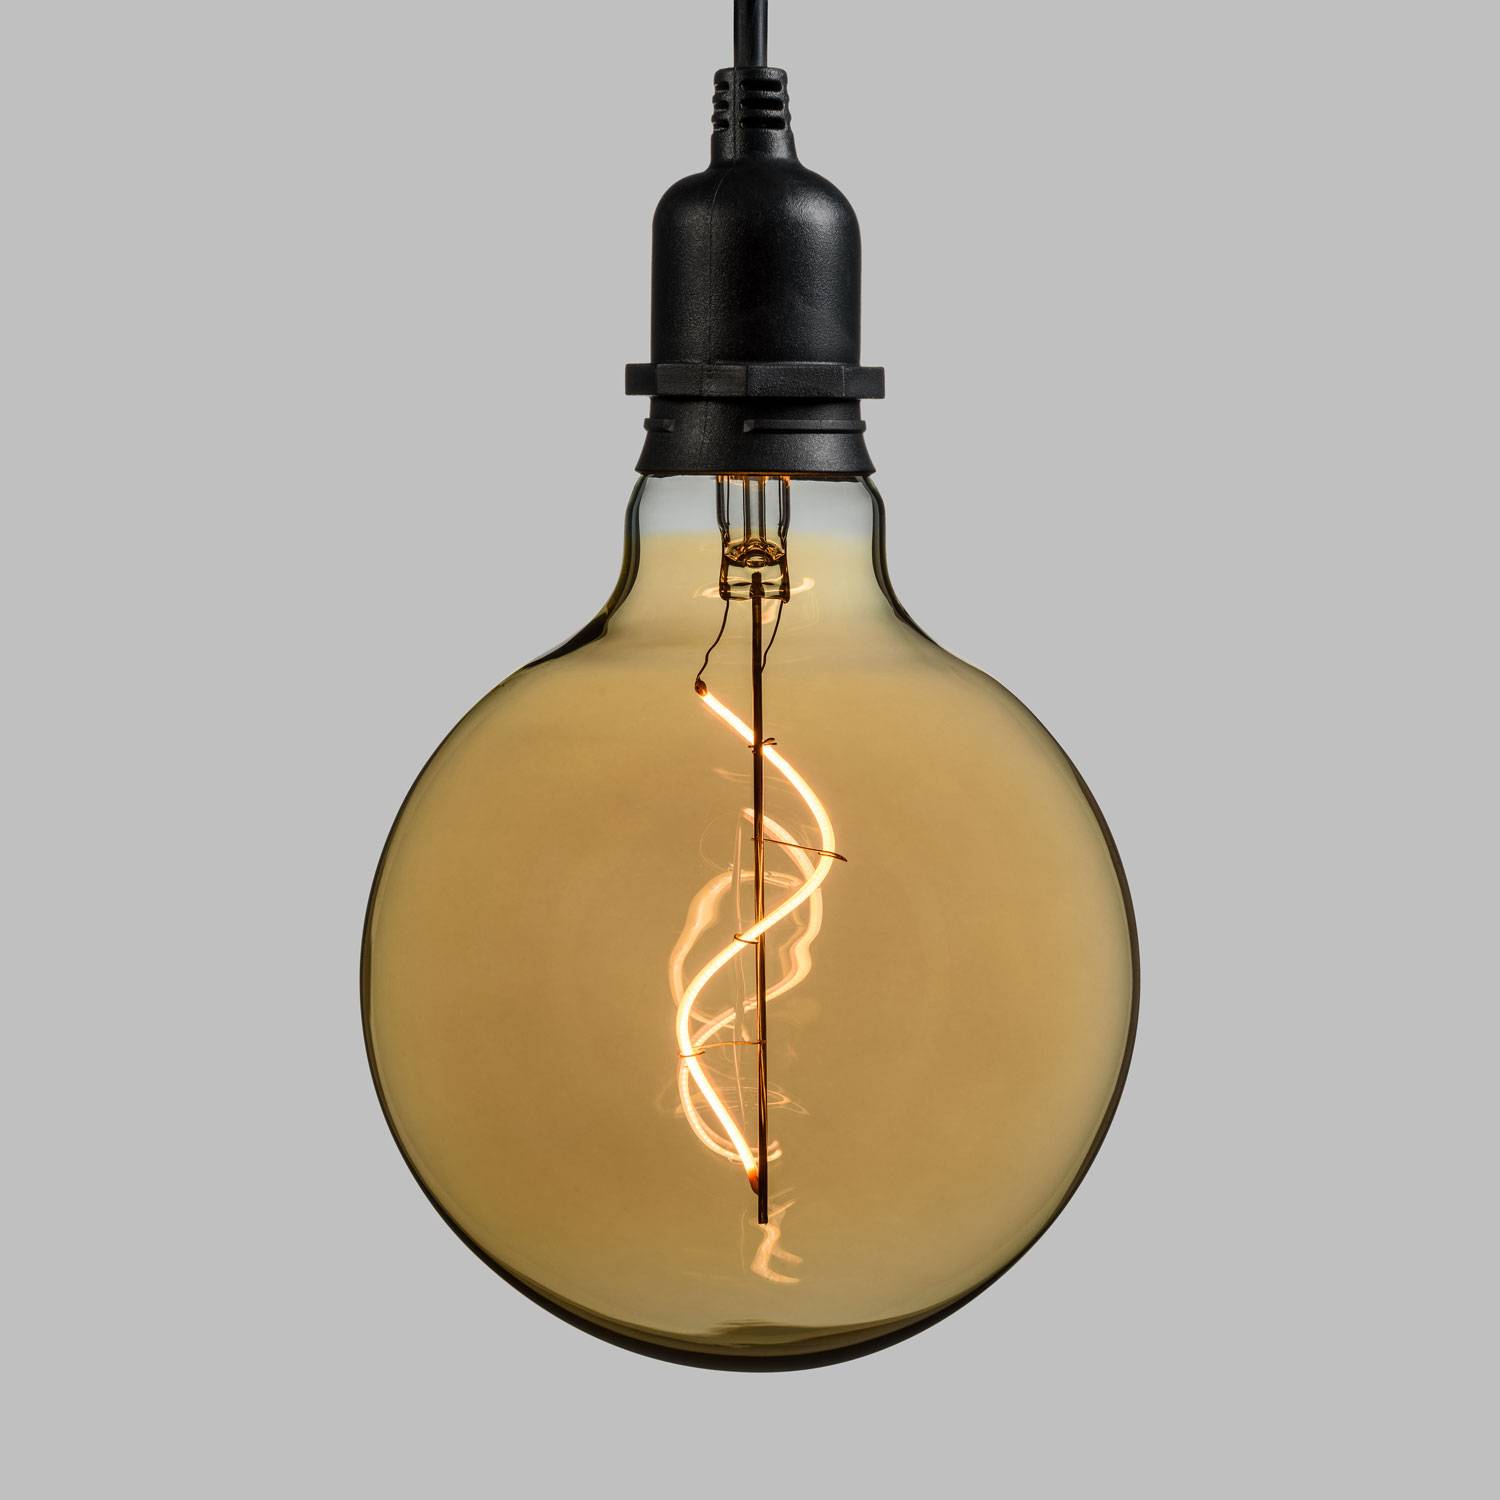 E27 Edison douille ampoule à visser pour suspension lampe de